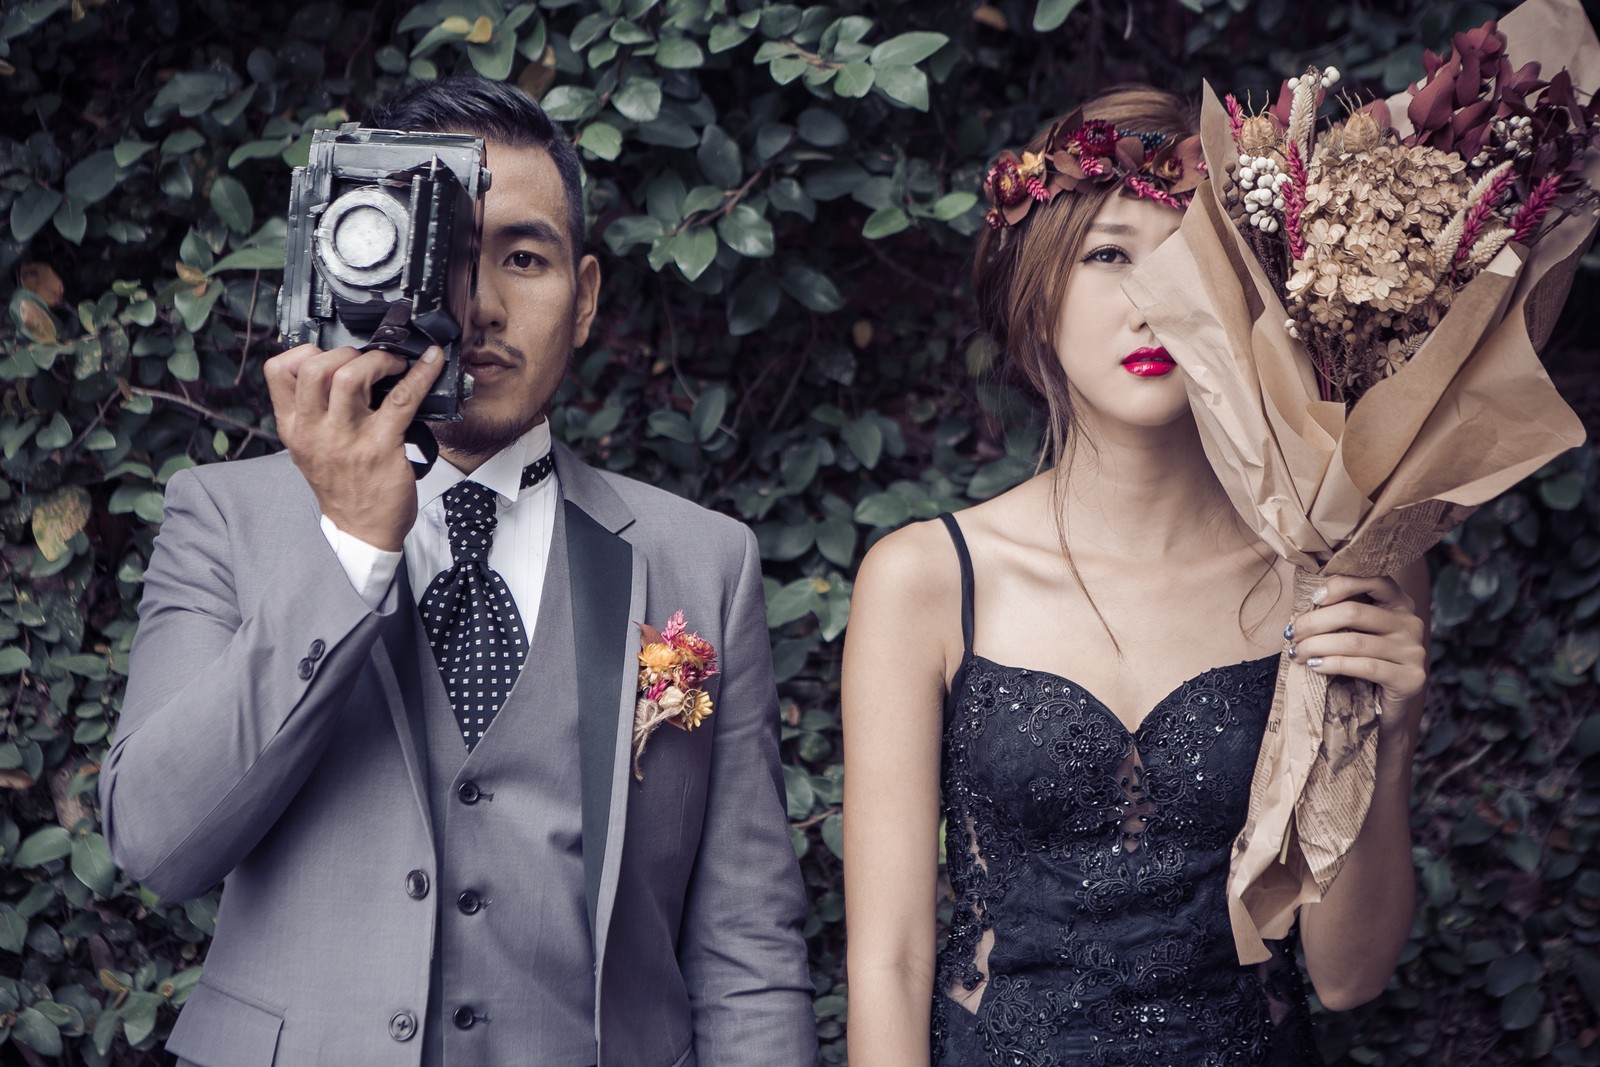  海外婚纱 旅行婚纱摄影 台灣最好拍的6大台北婚纱照景点